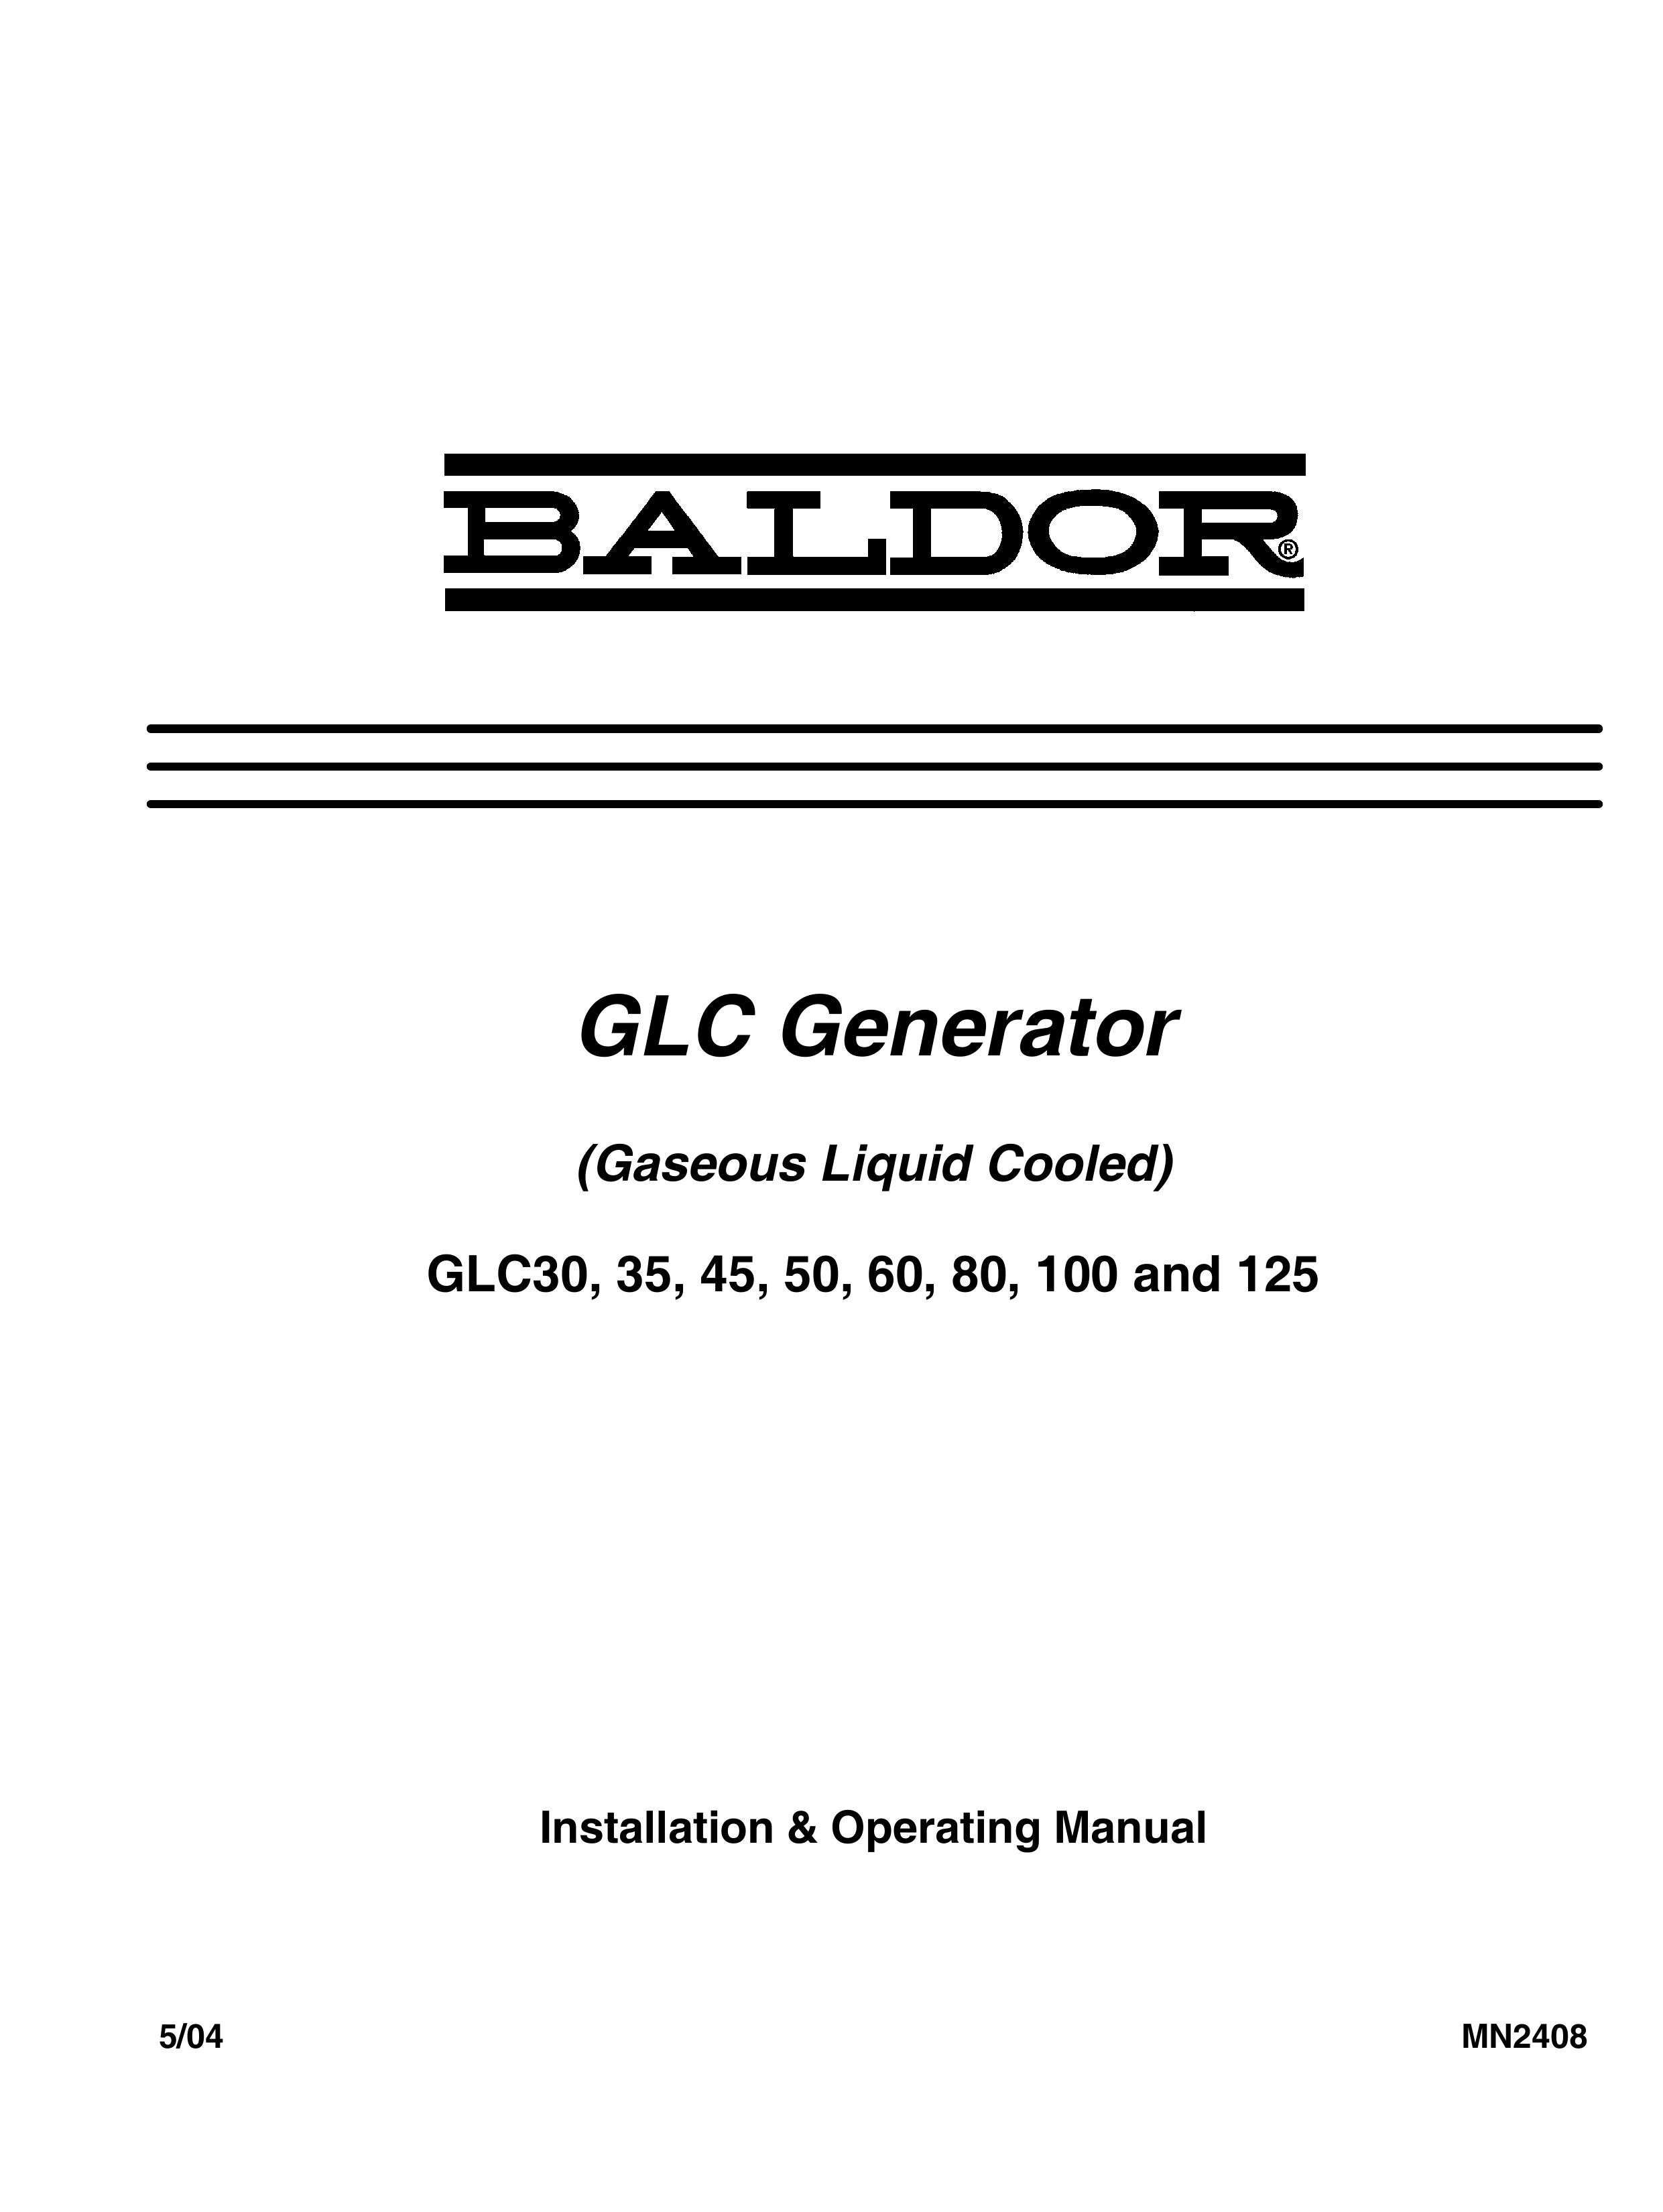 Baldor GLC125 Portable Generator User Manual